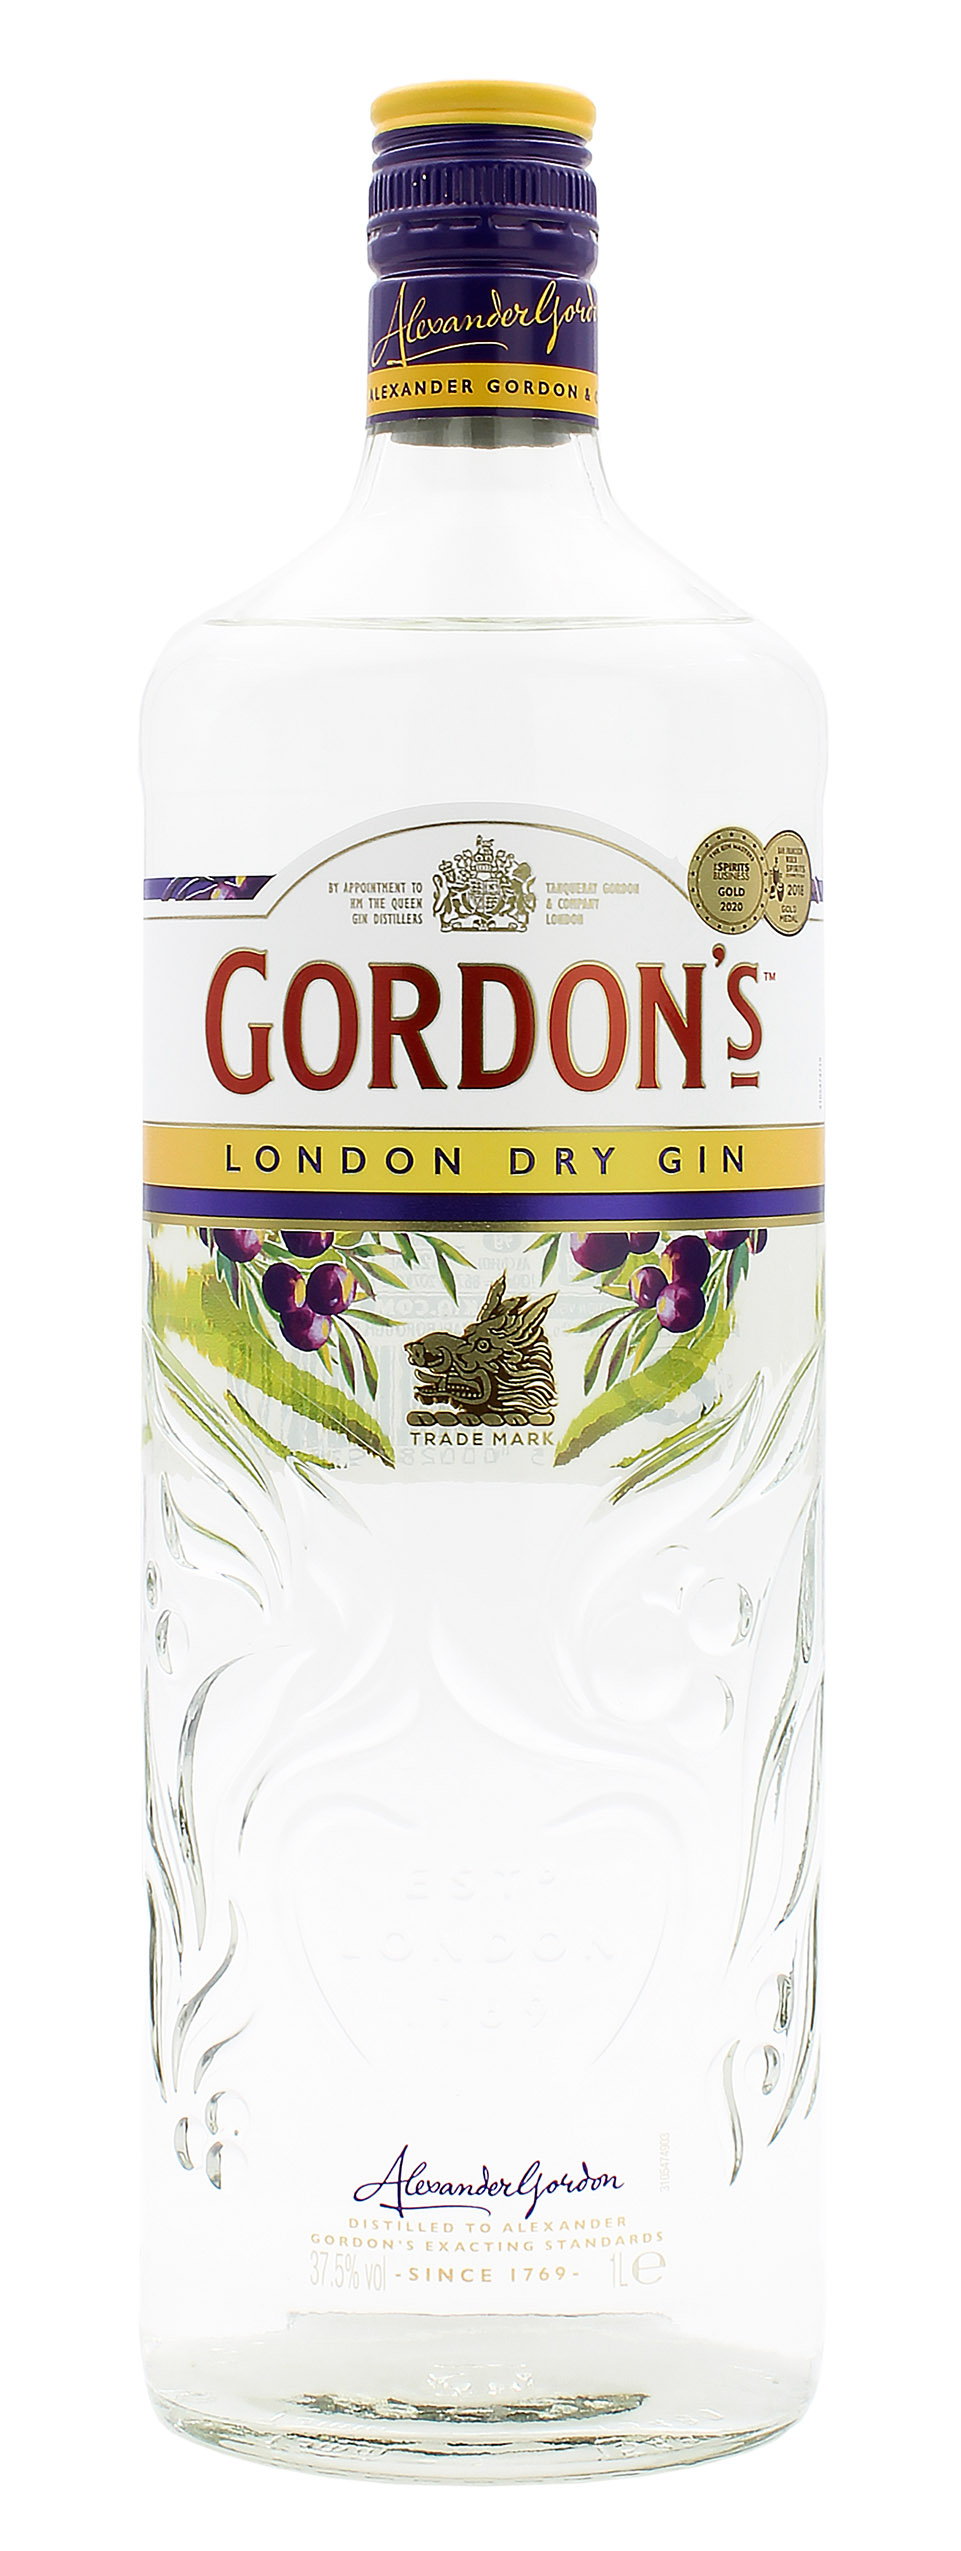 Gordon's London Dry Gin 37.5% 1 Liter